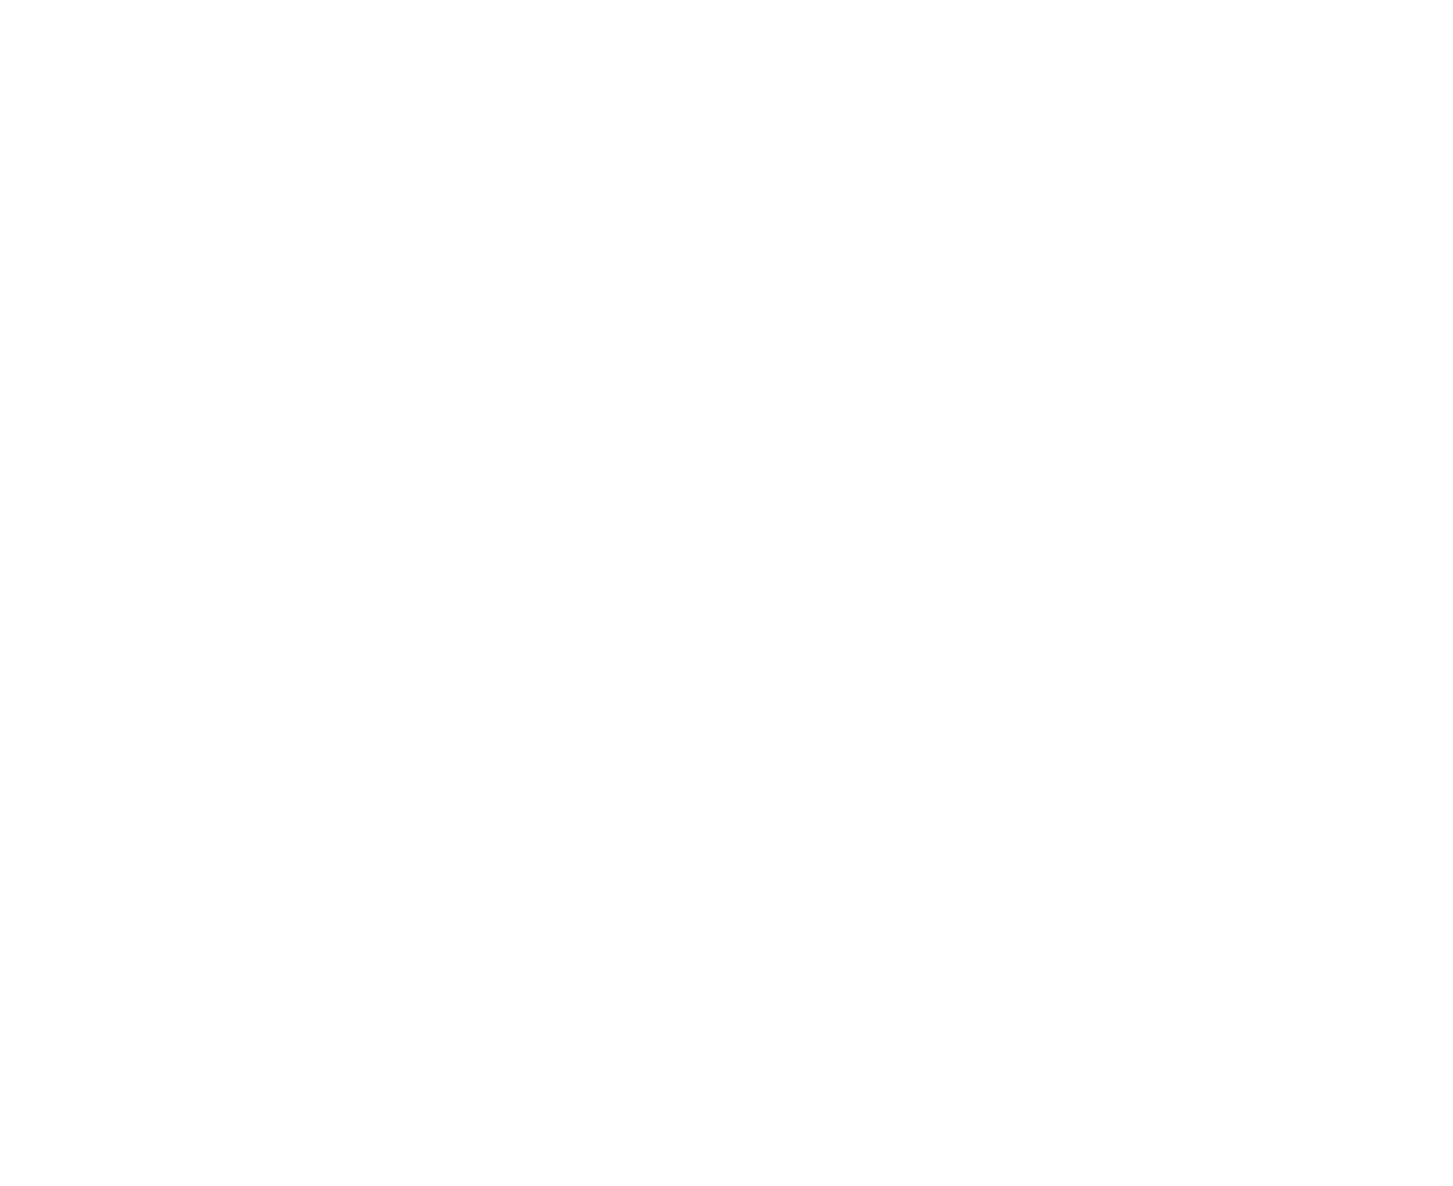 ArrudArtes